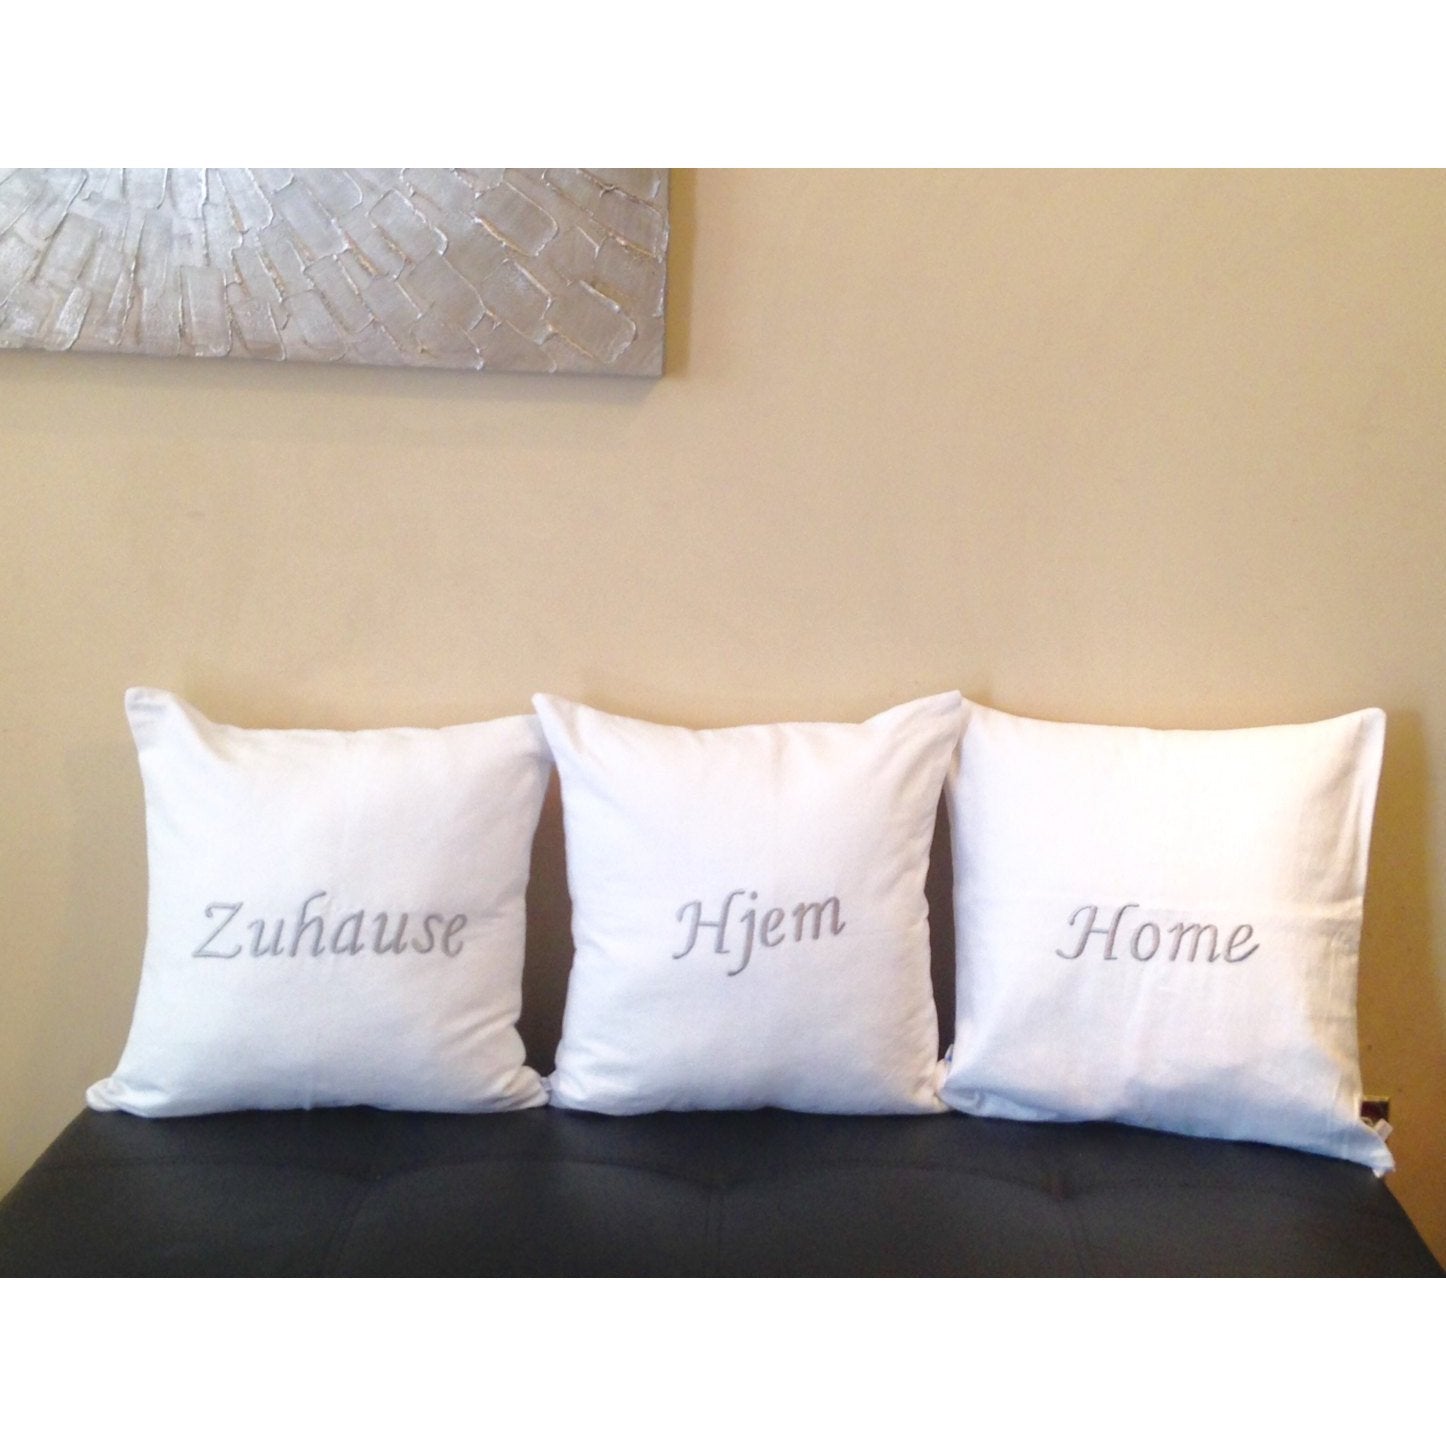 Personalized White Throw Pillows